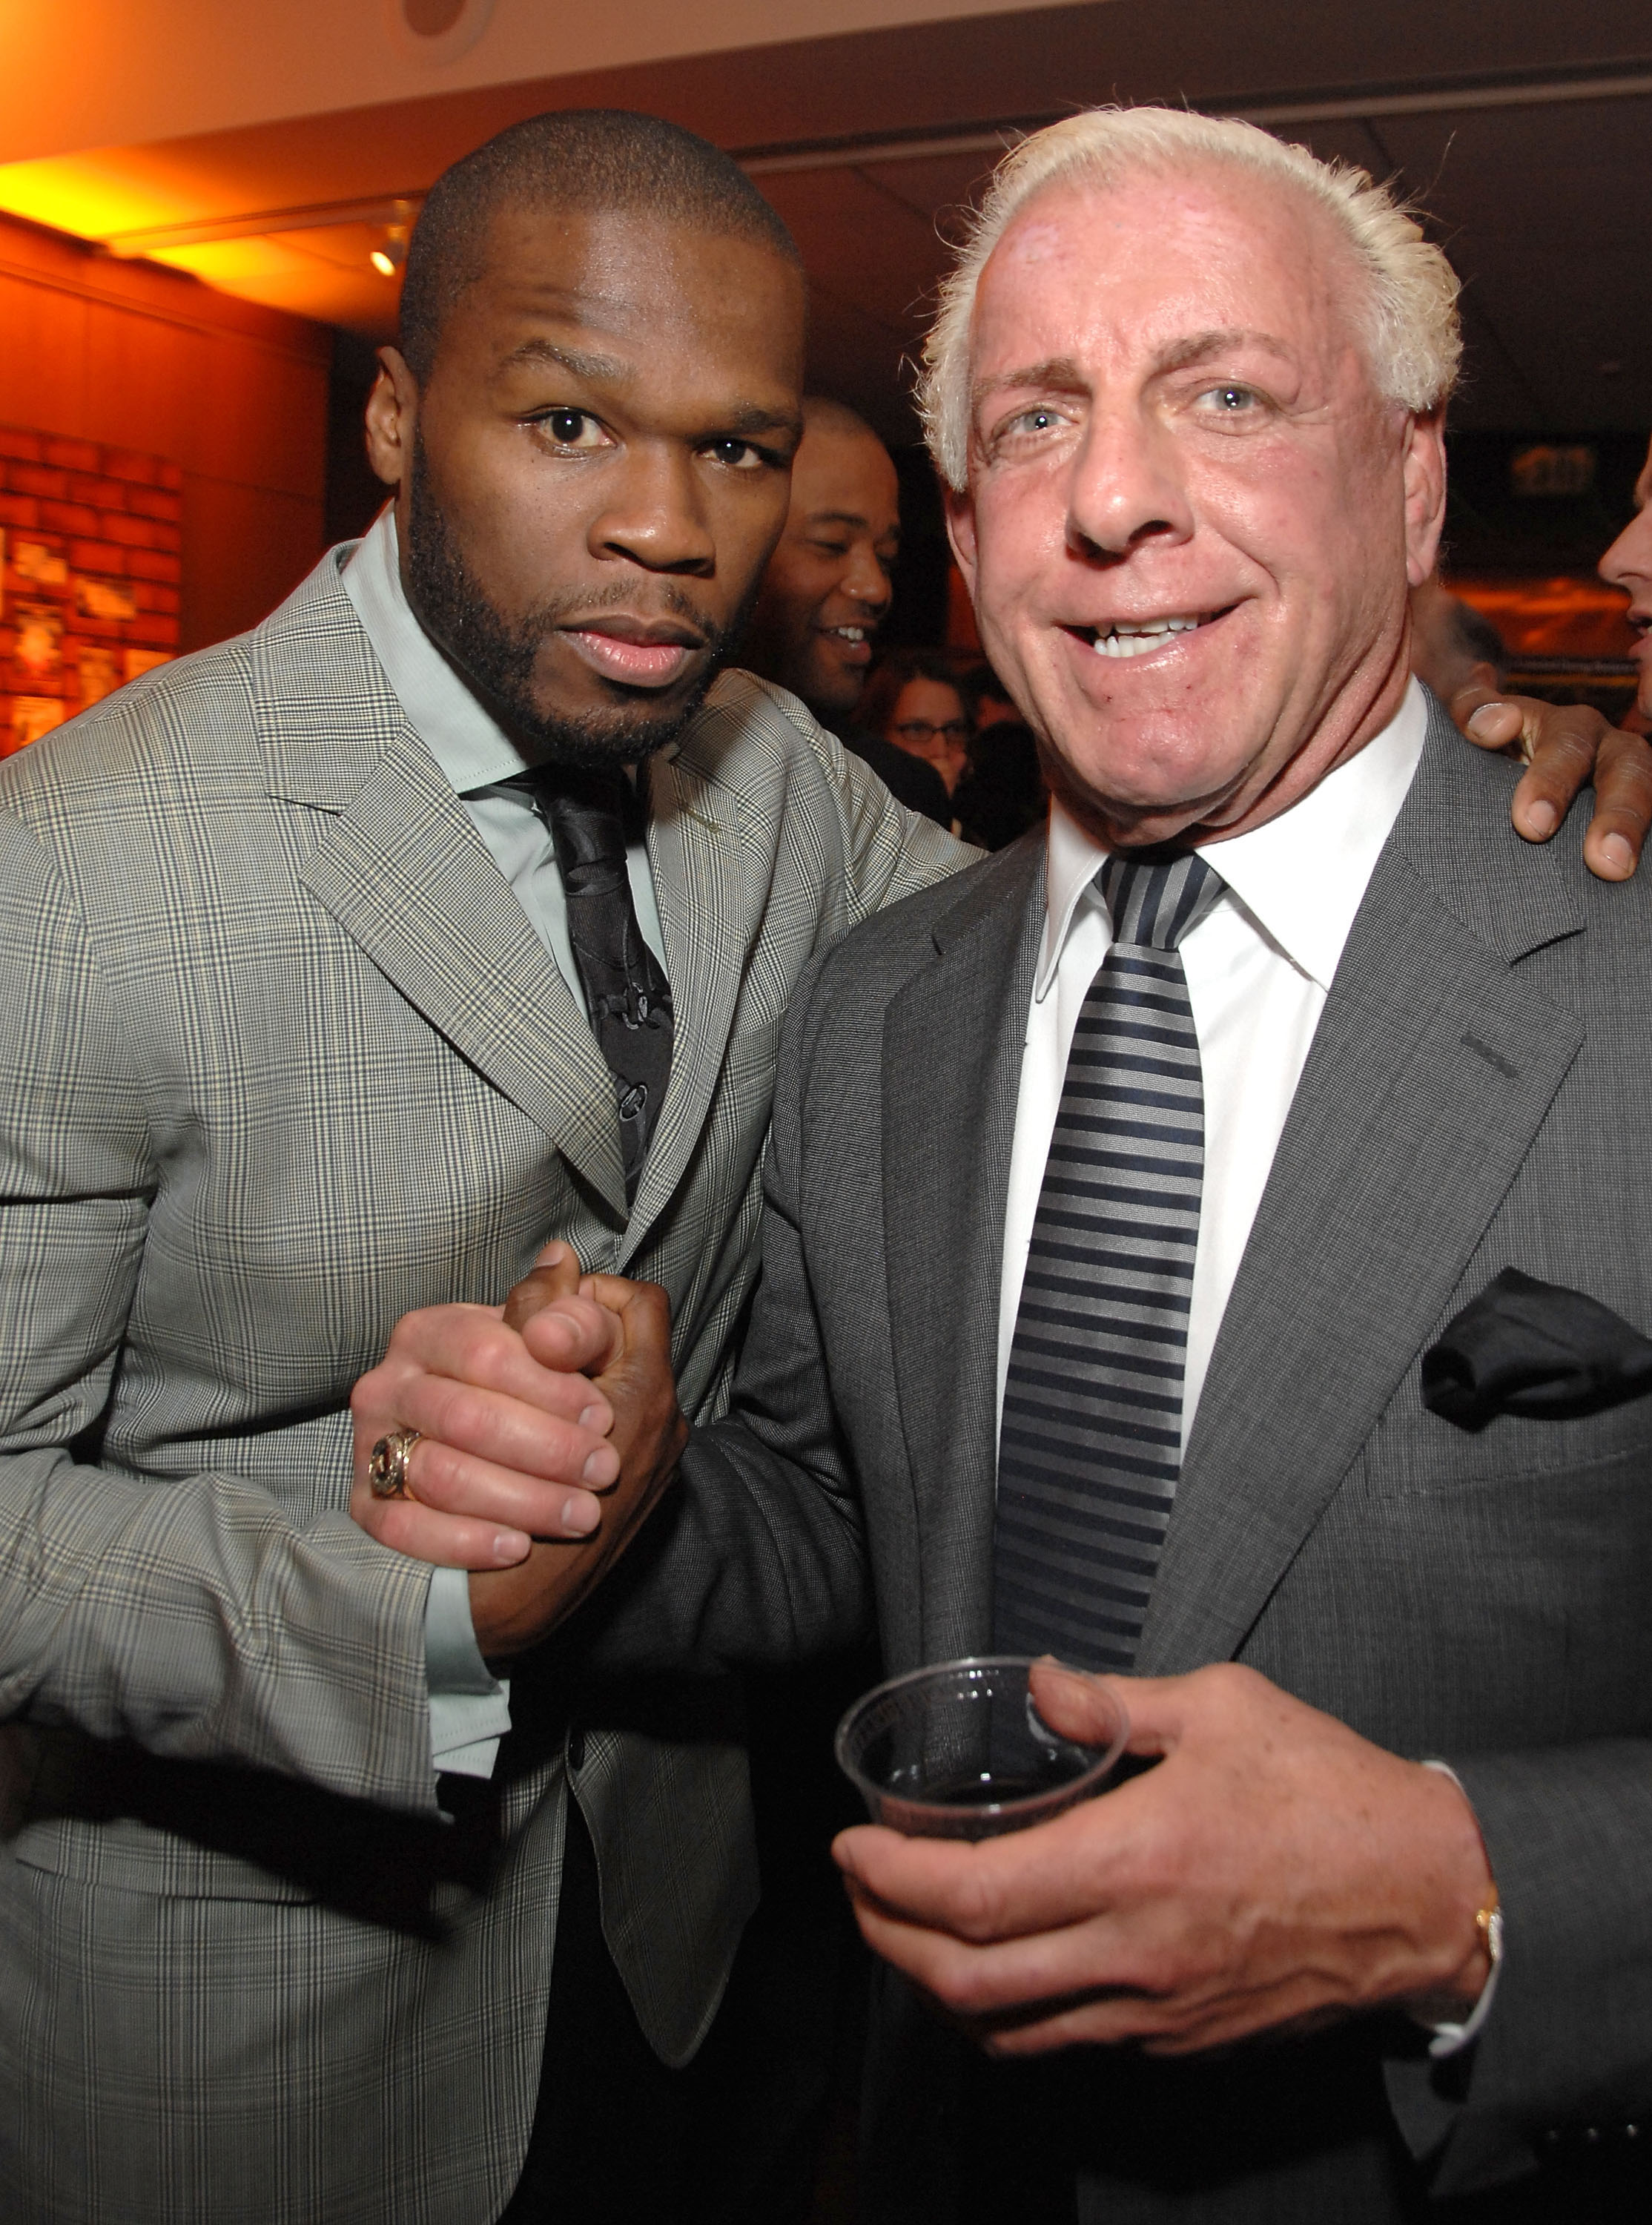 Ric Flair & 50 Cent